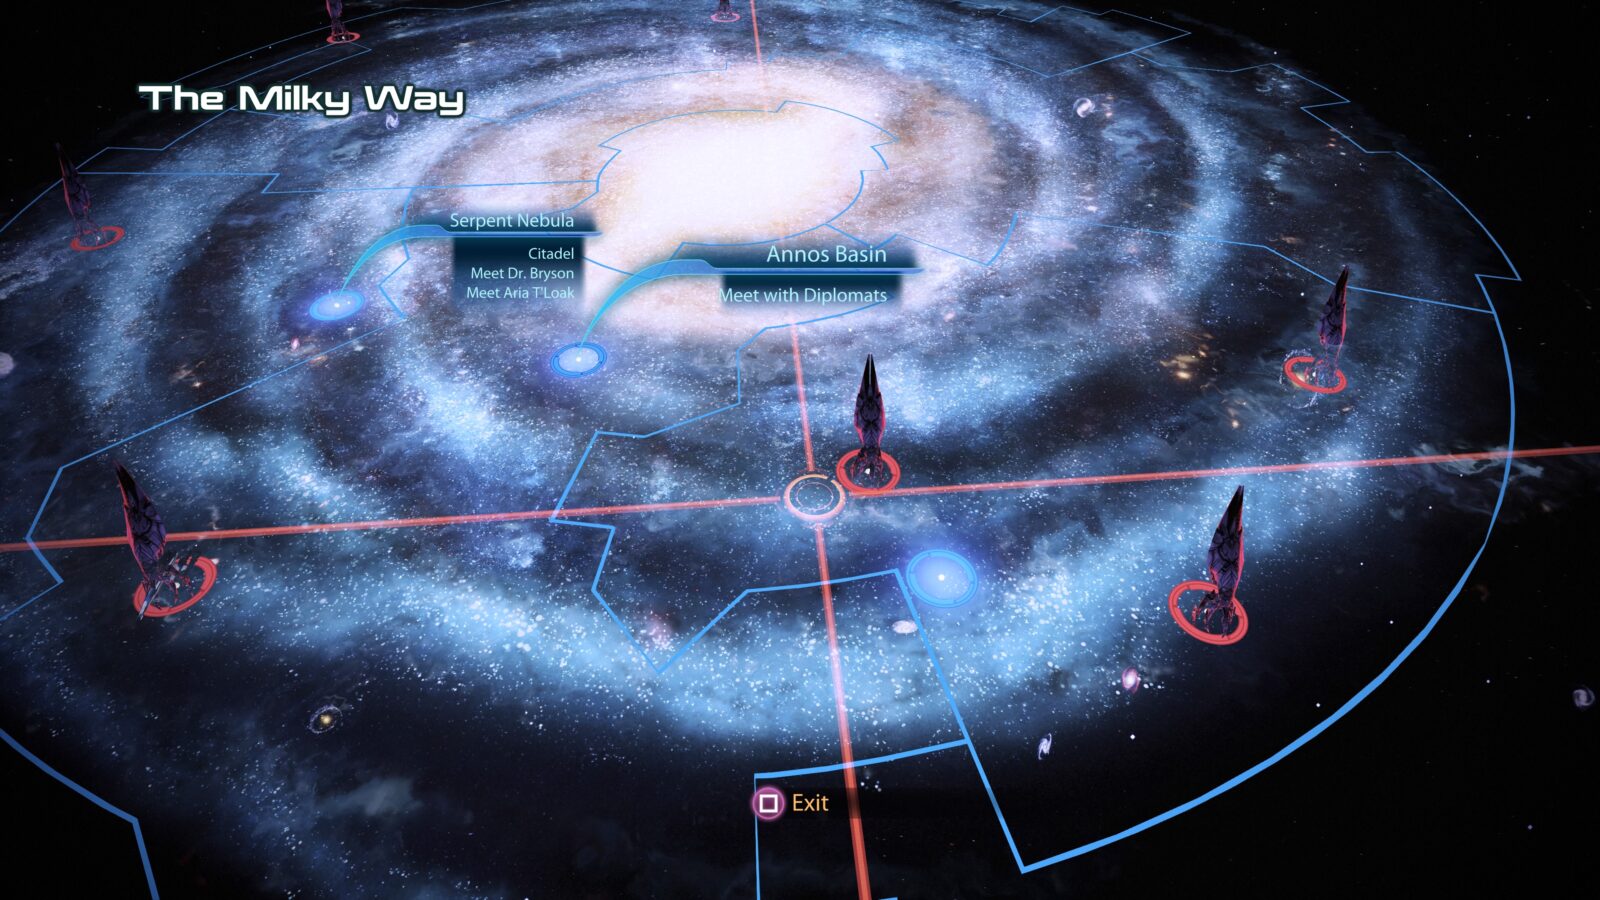 Mass effect 3 карта галактики с ресурсами - 87 фото